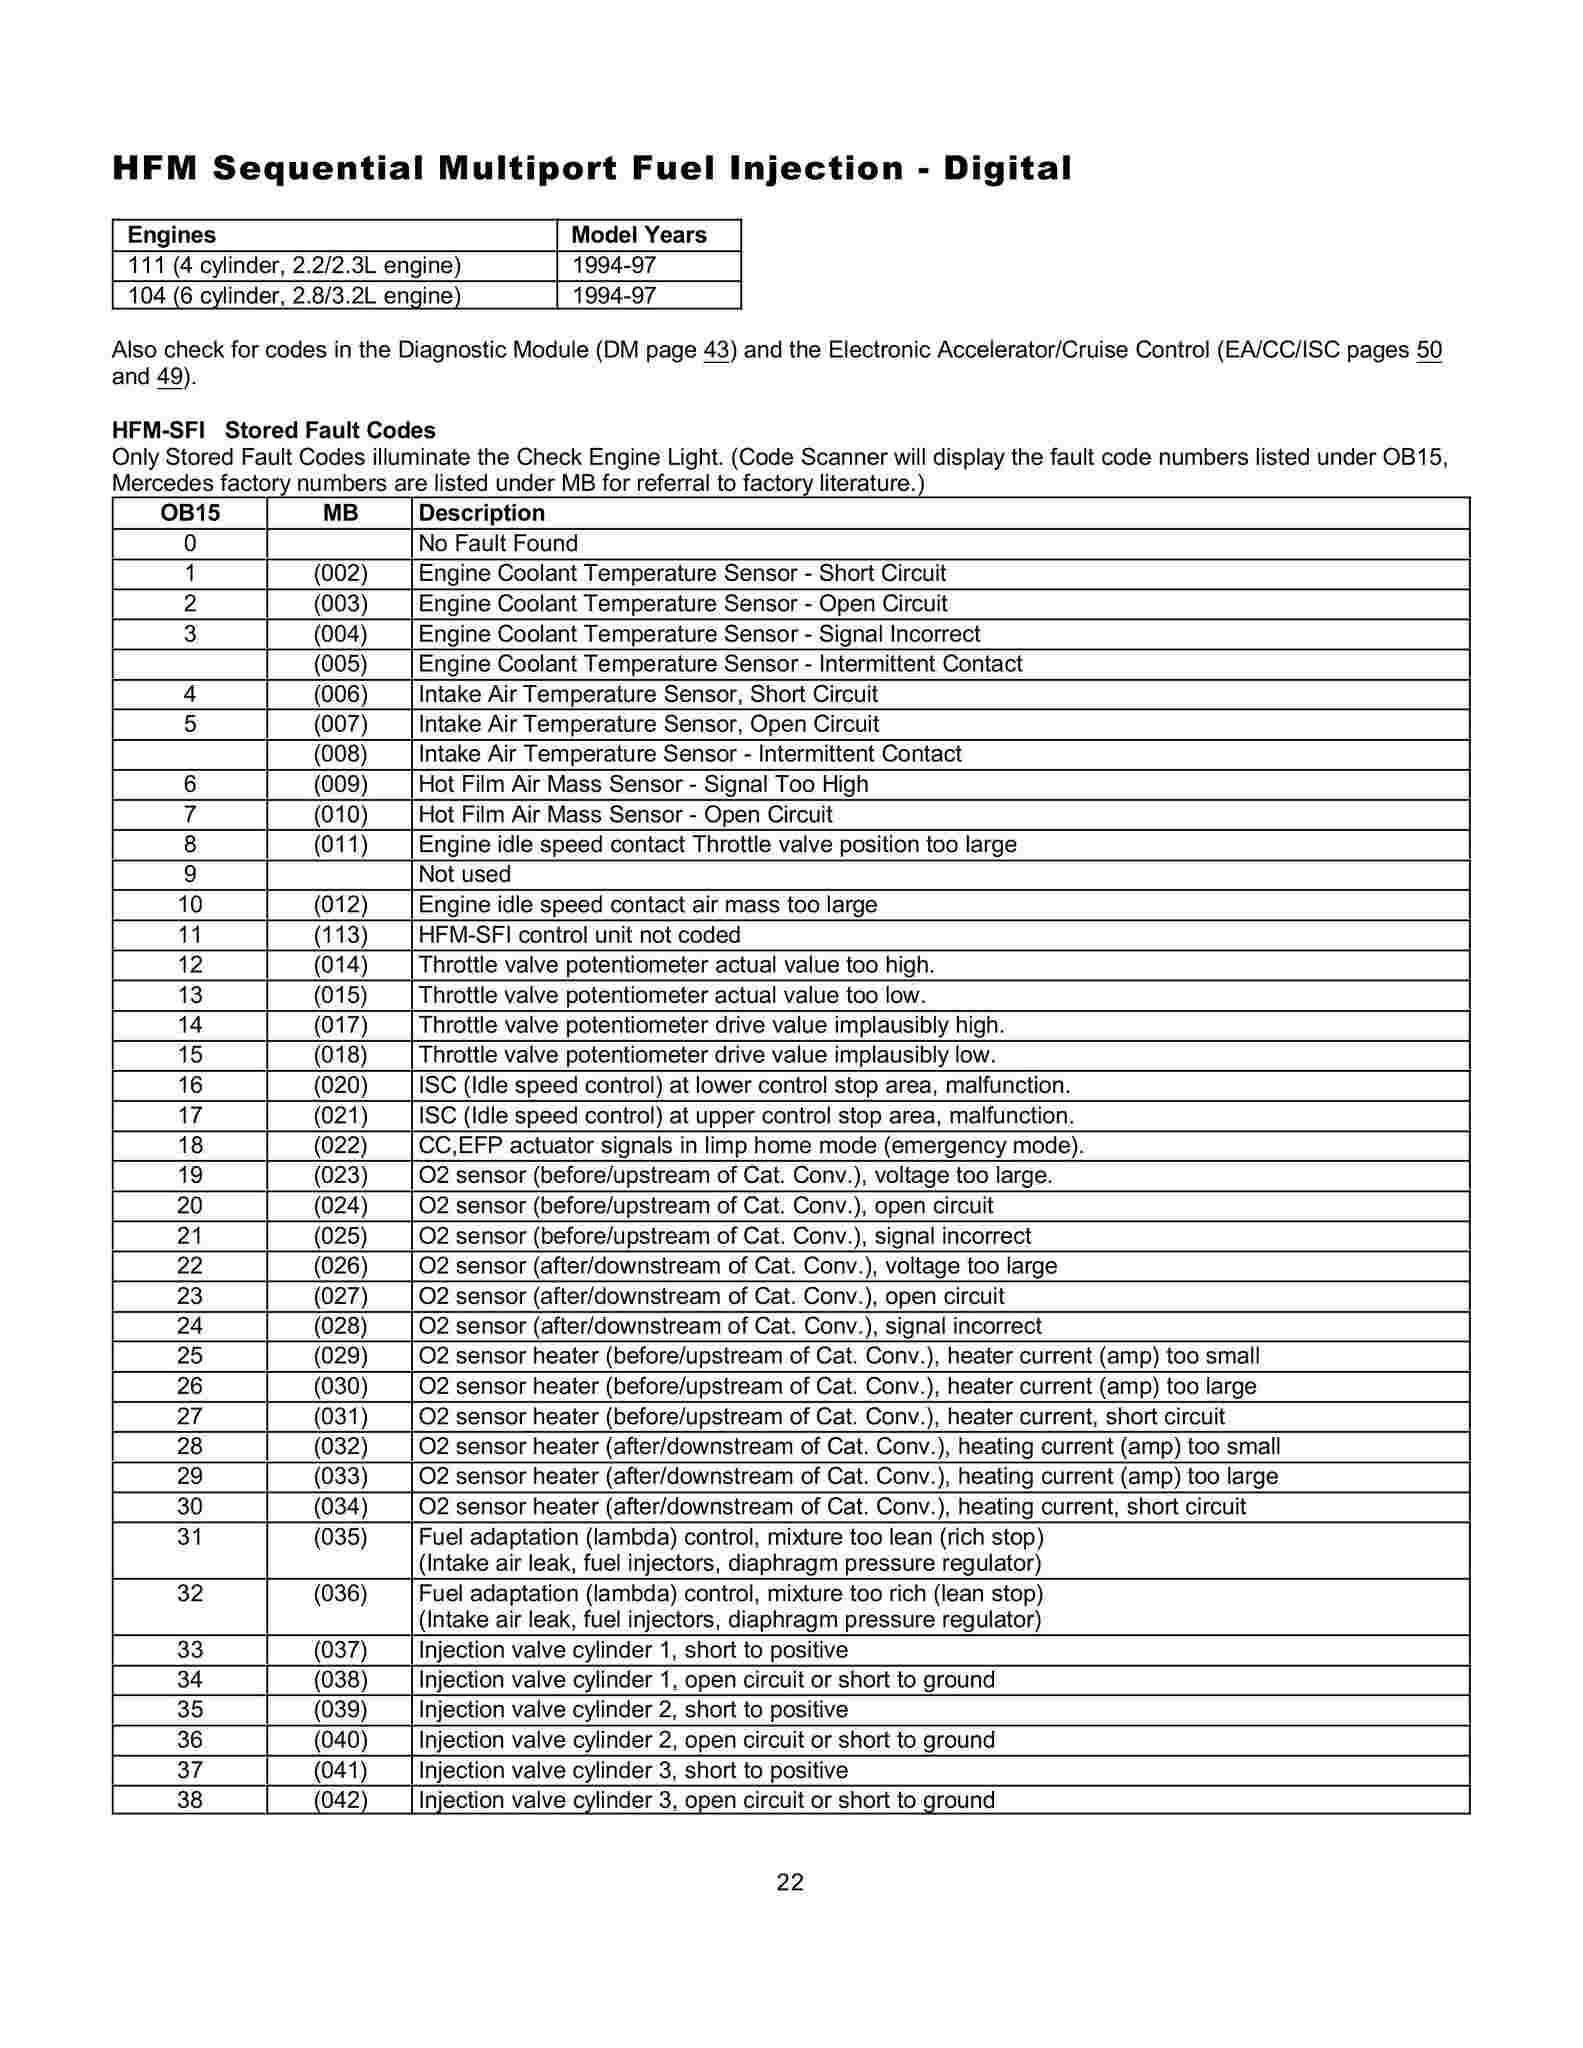 Lista de Códigos de falhas (fault codes) Mercedes-Benz 002213